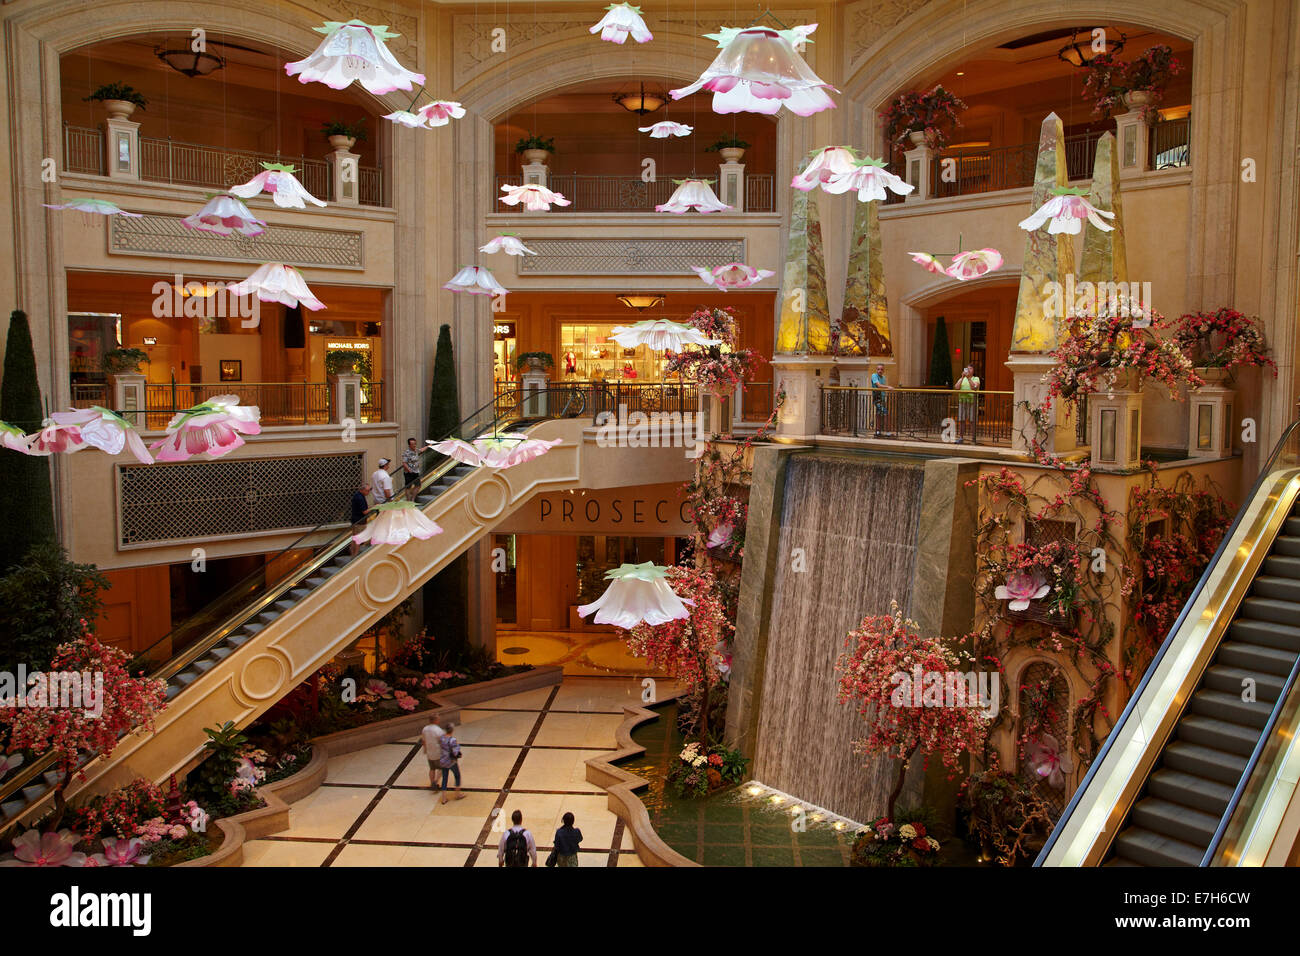 Atrium with waterfall, The Palazzo, Las Vegas, Nevada, USA Stock Photo -  Alamy